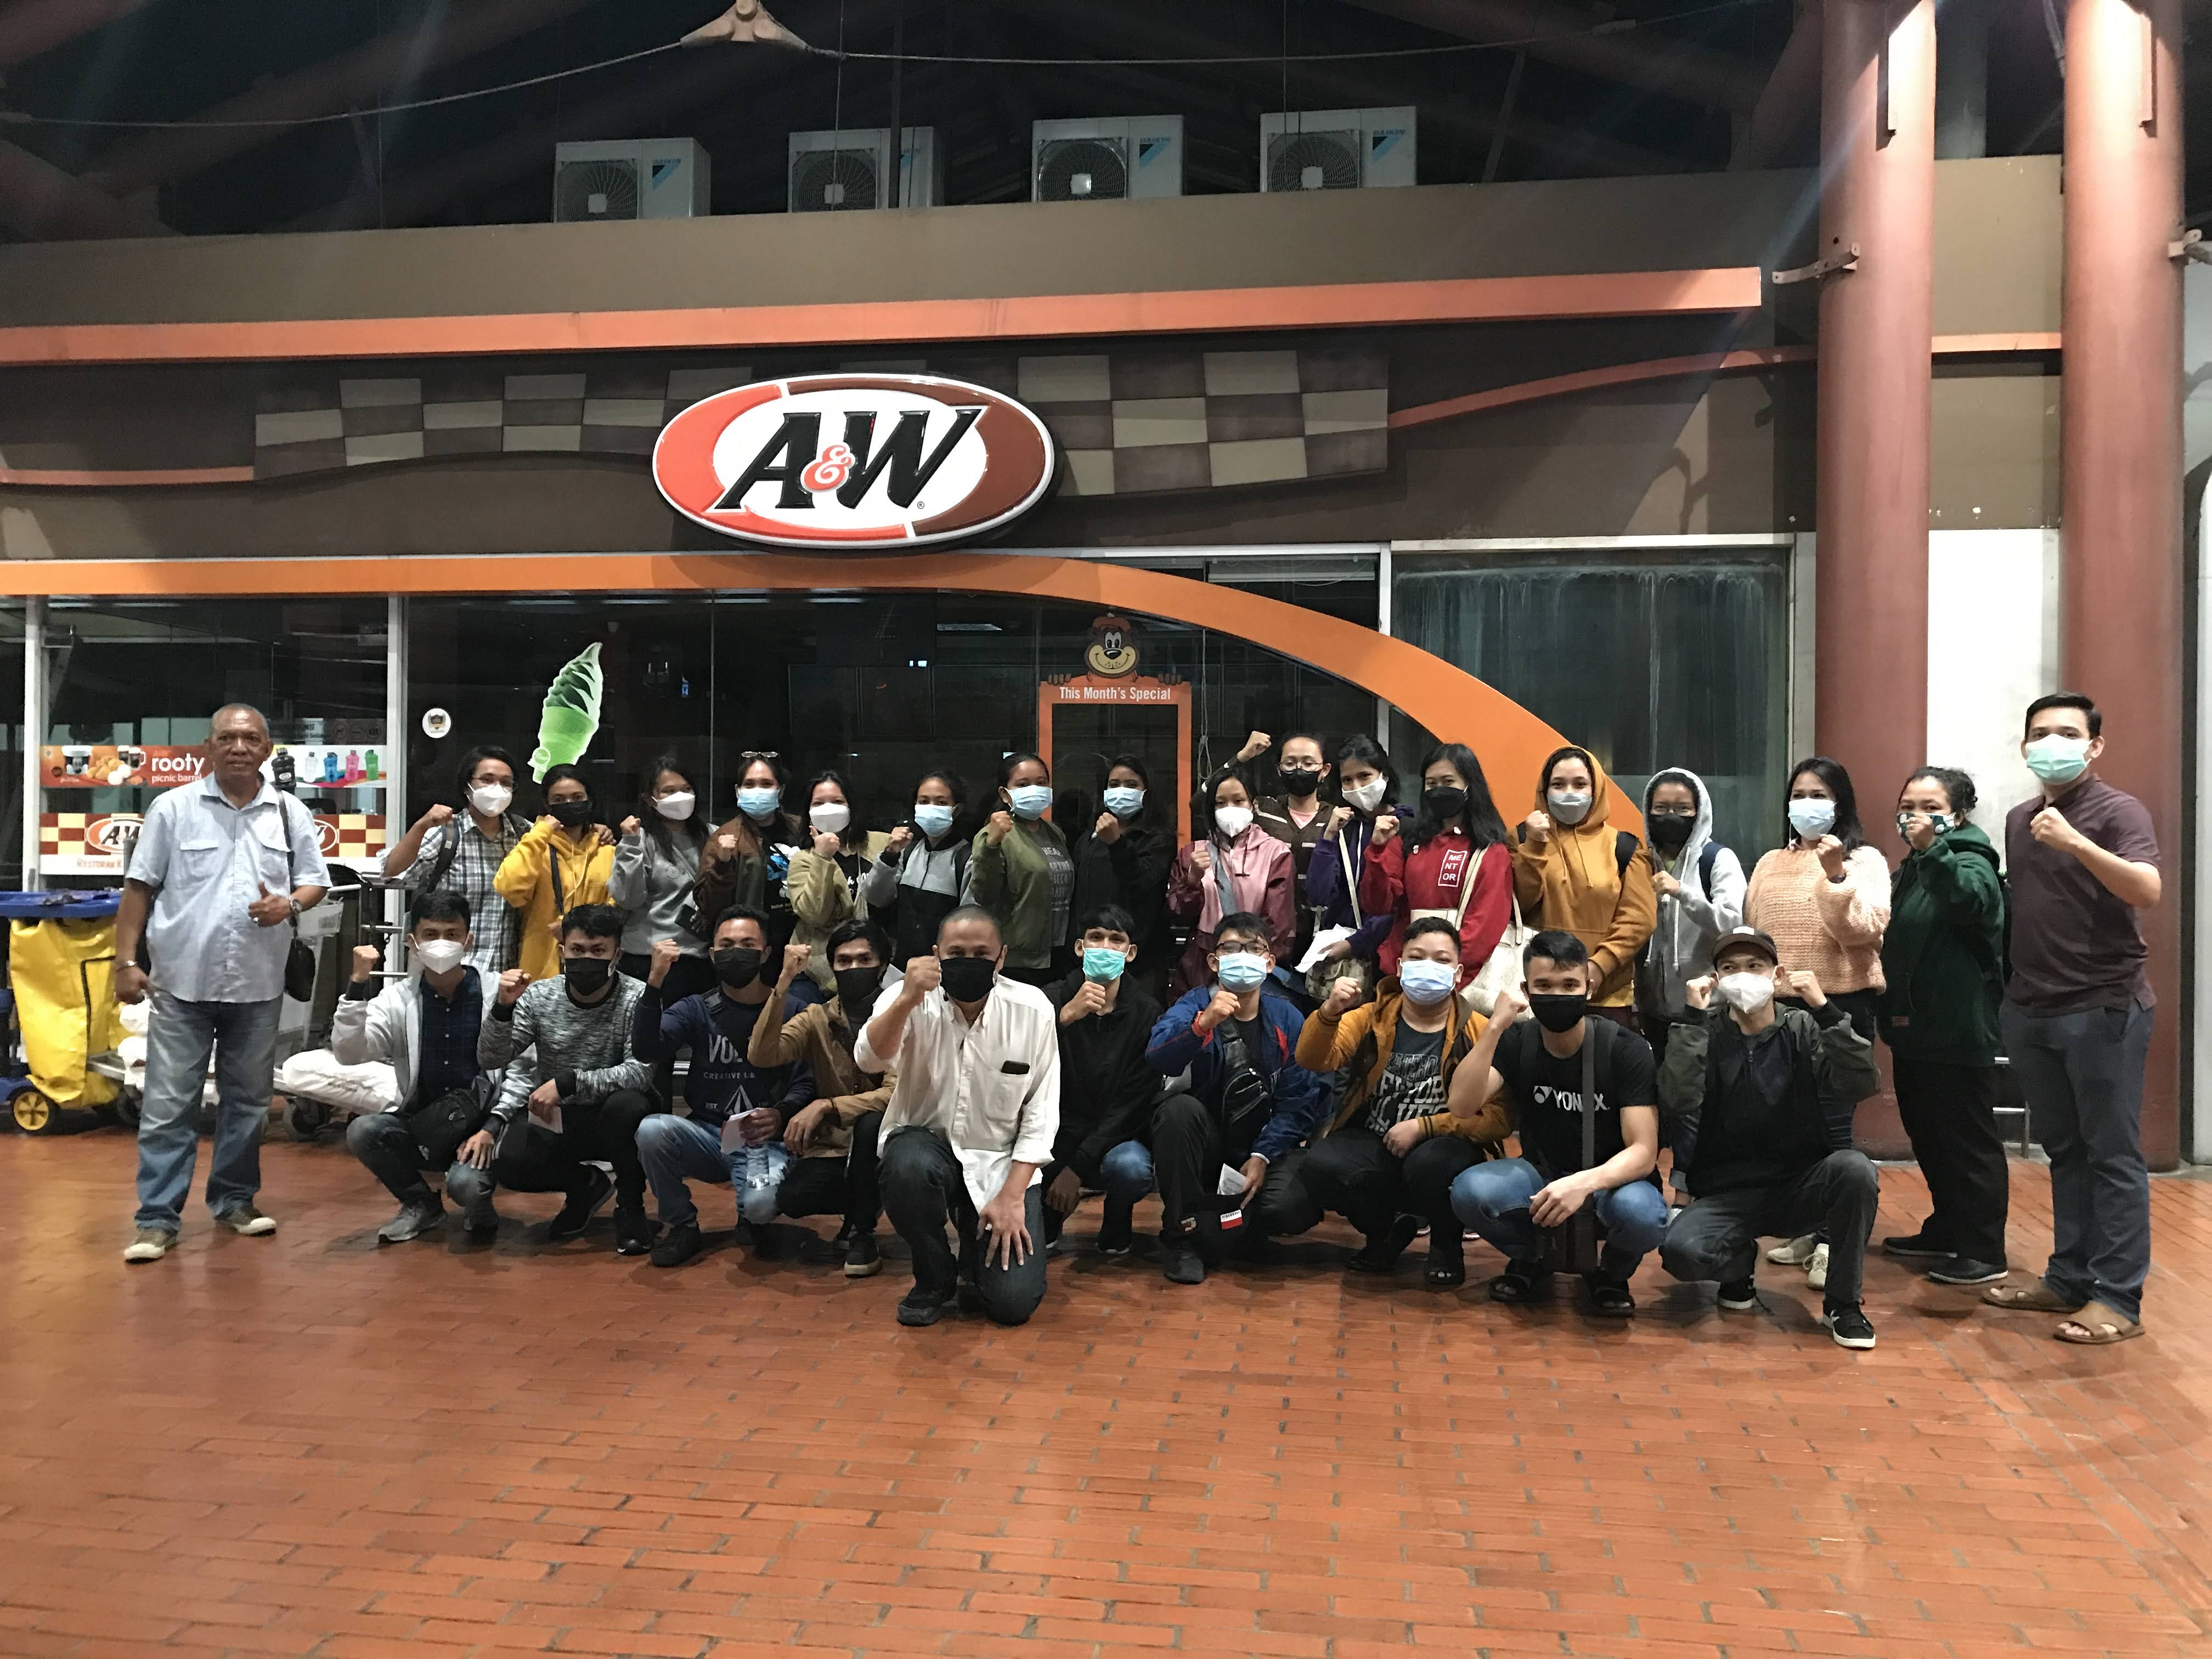 sekumpulan orang sedang berfoto bersama menggunakan masker dengan latar belakang restoran A&W